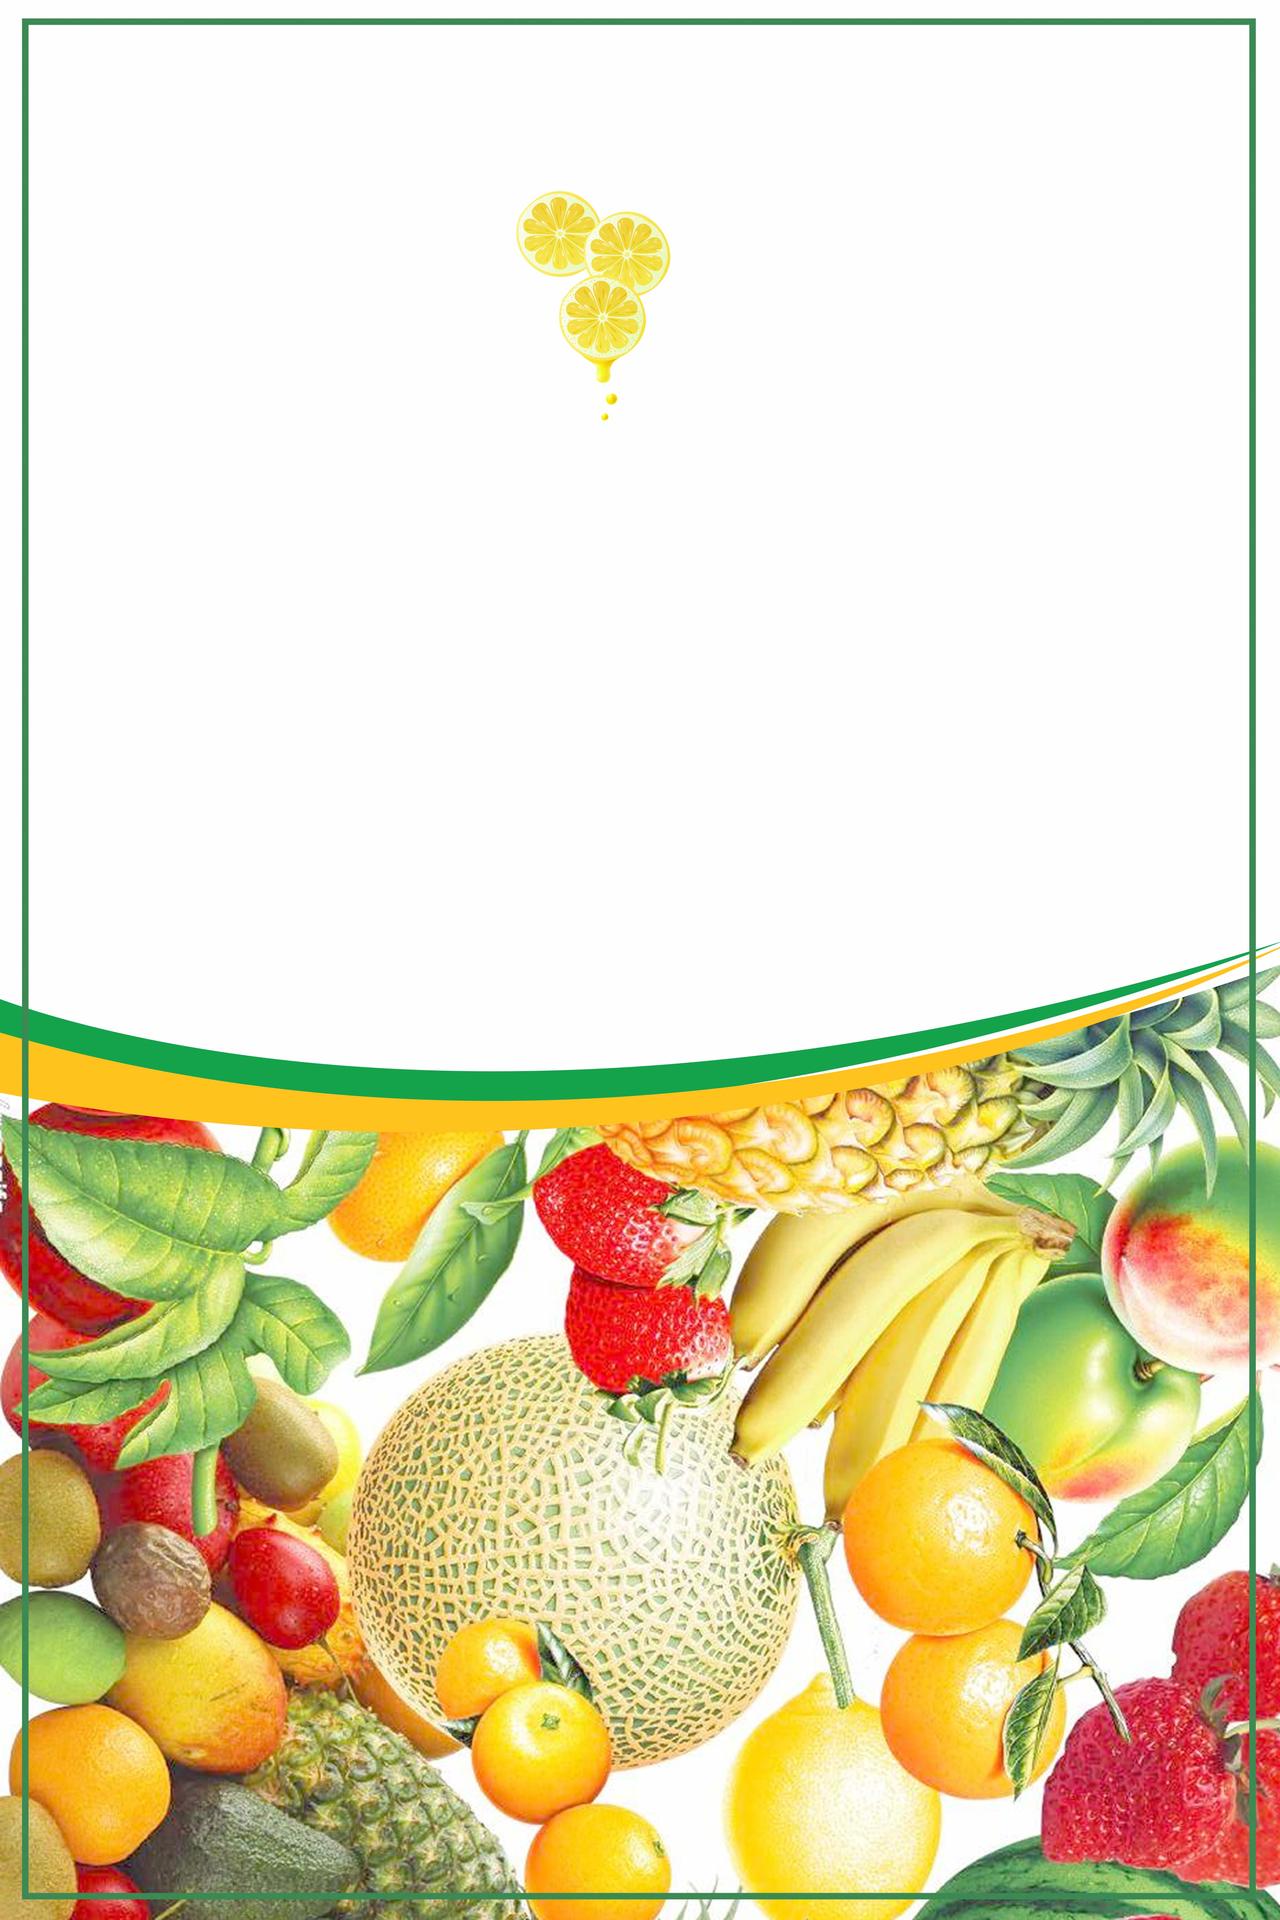 白色背景各种水果水果海报宣传画册背景图